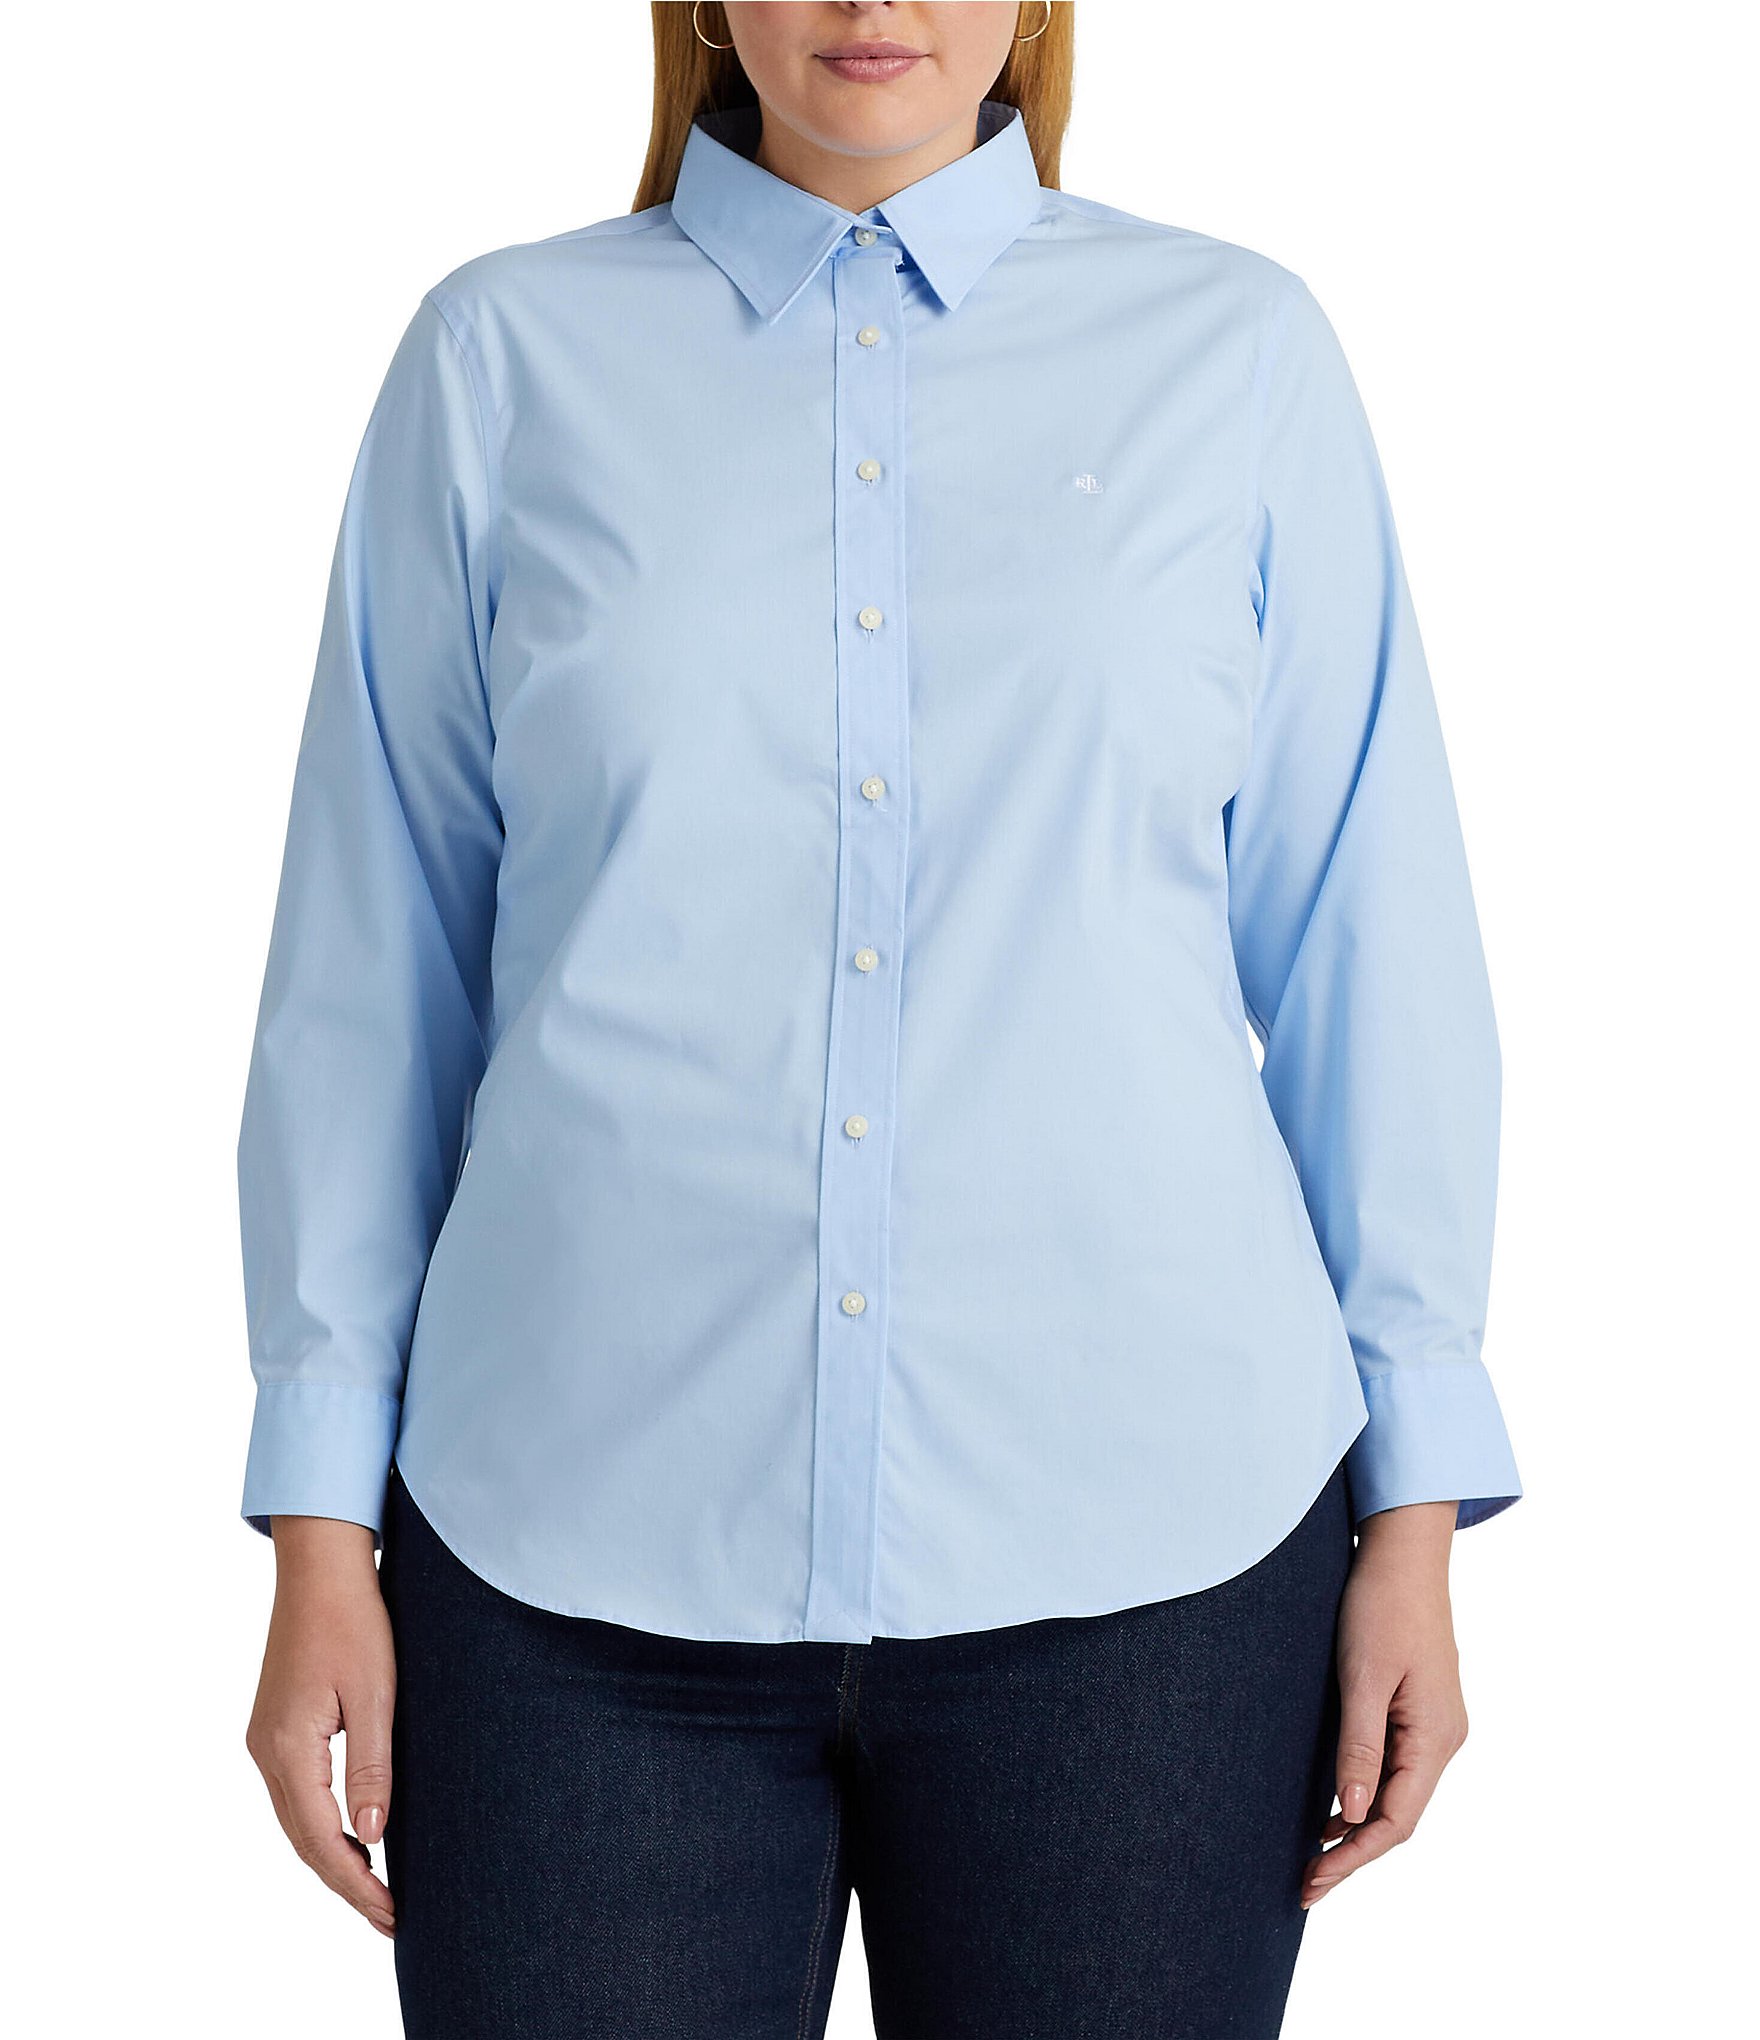 Lauren Ralph Lauren Women's Plus Size Easy Care Cotton Shirt, Blue, 1x